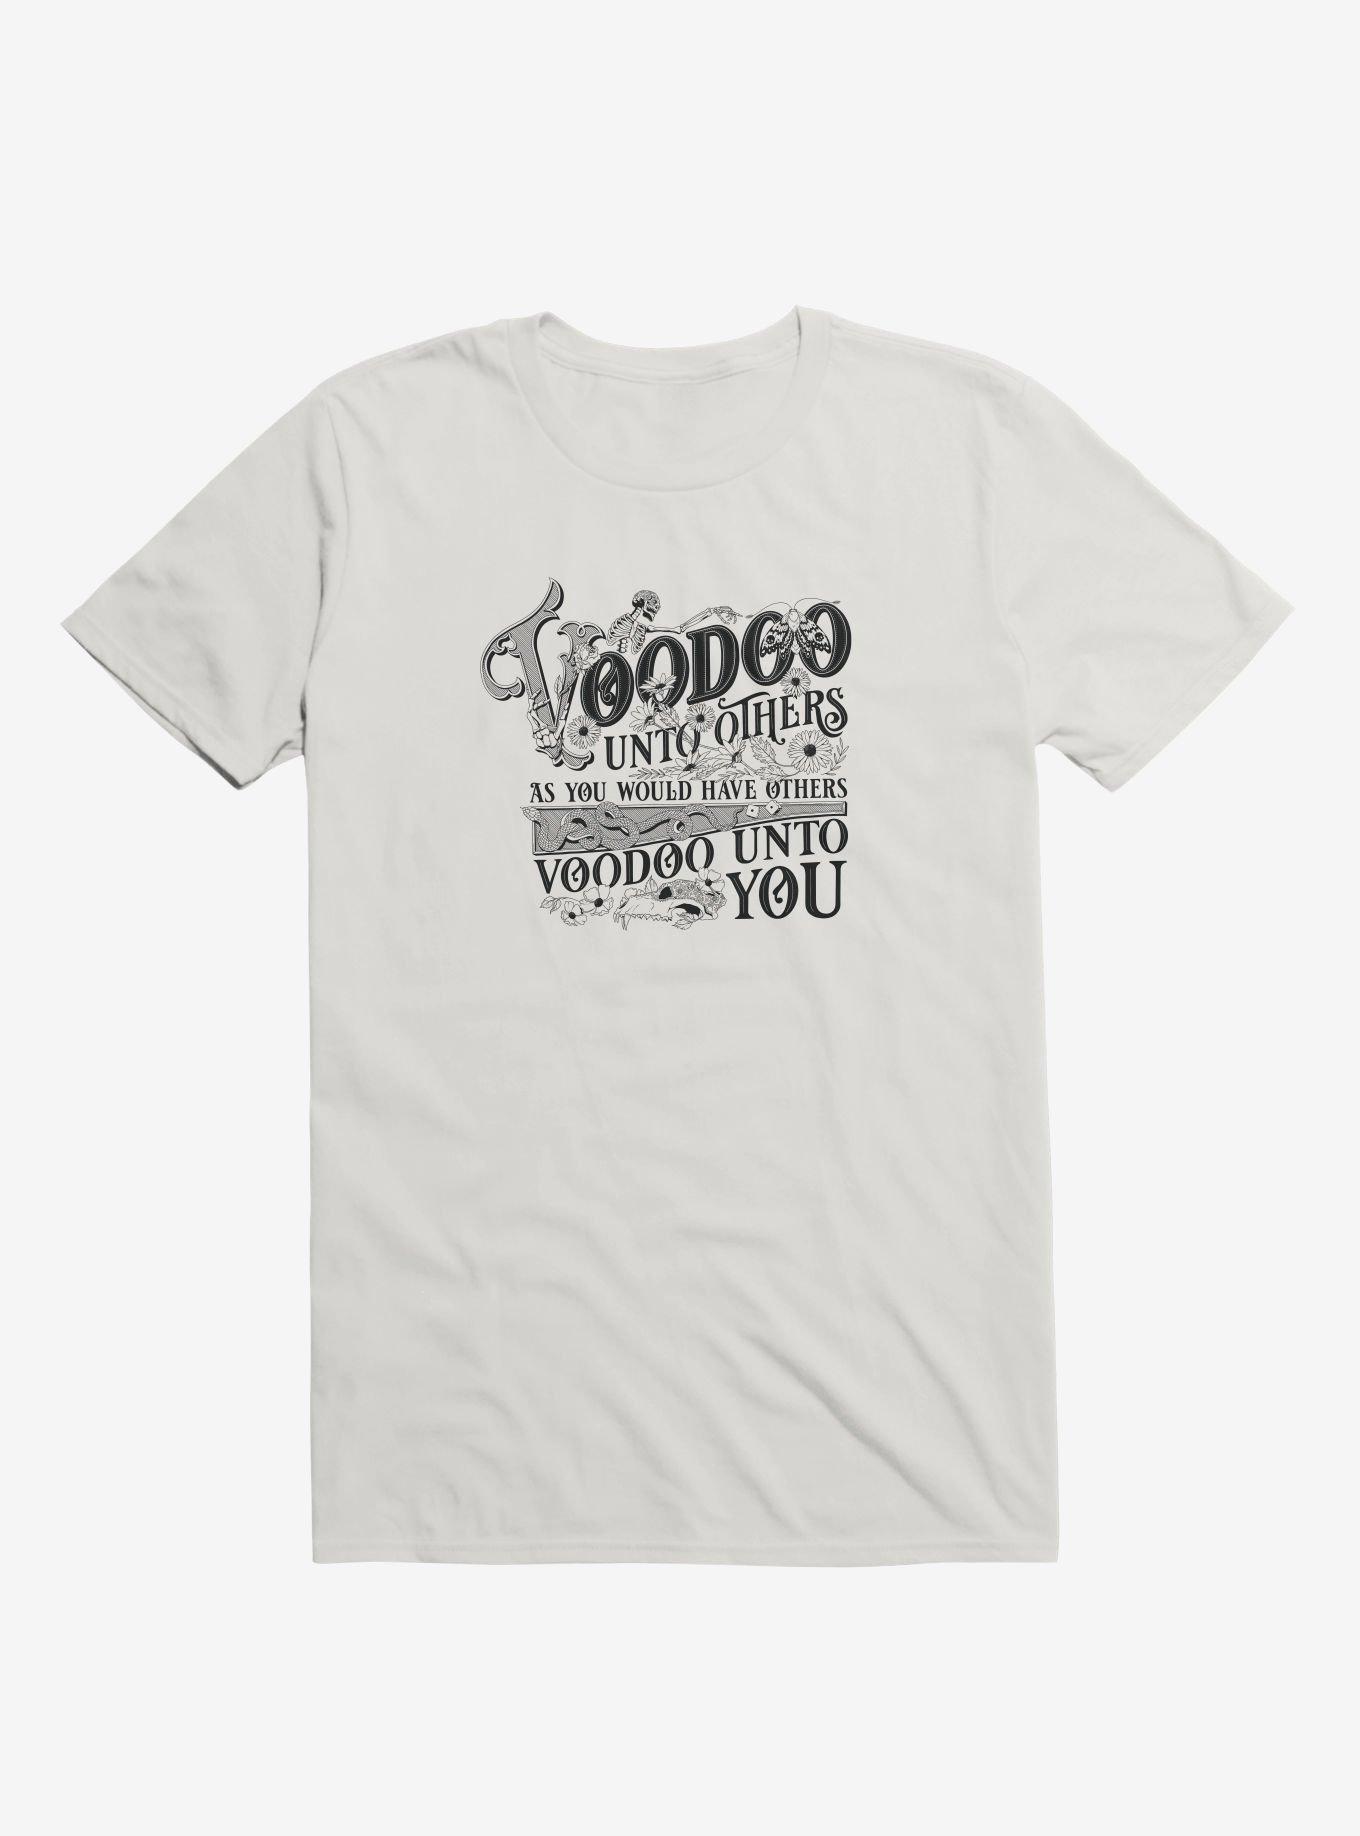 Voodoo Unto Others T-Shirt